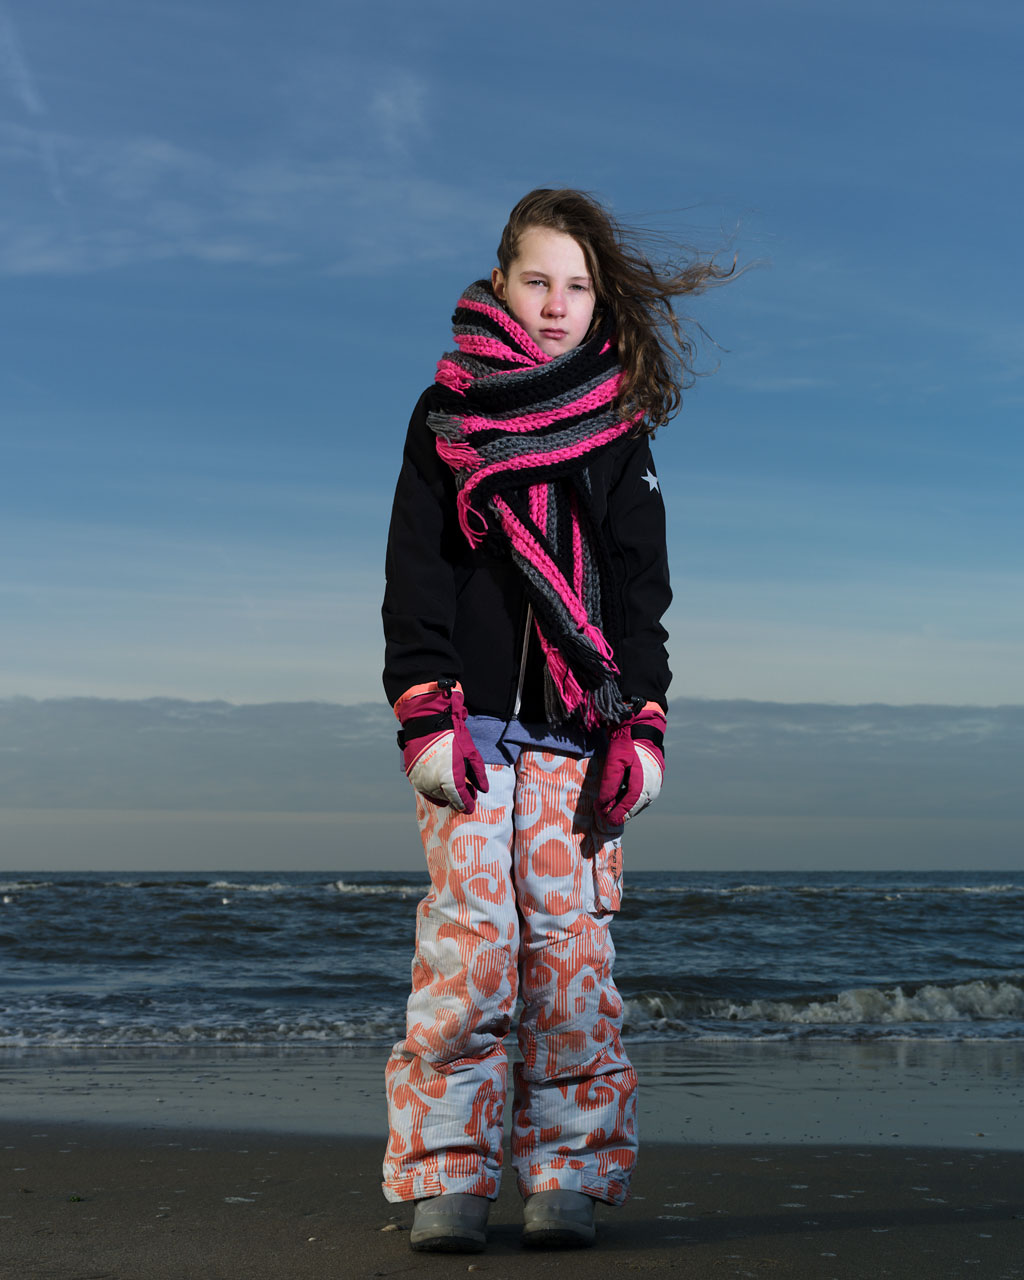 Goede Beach portraits Rineke Dijkstra – Joeri van Veen ZL-06